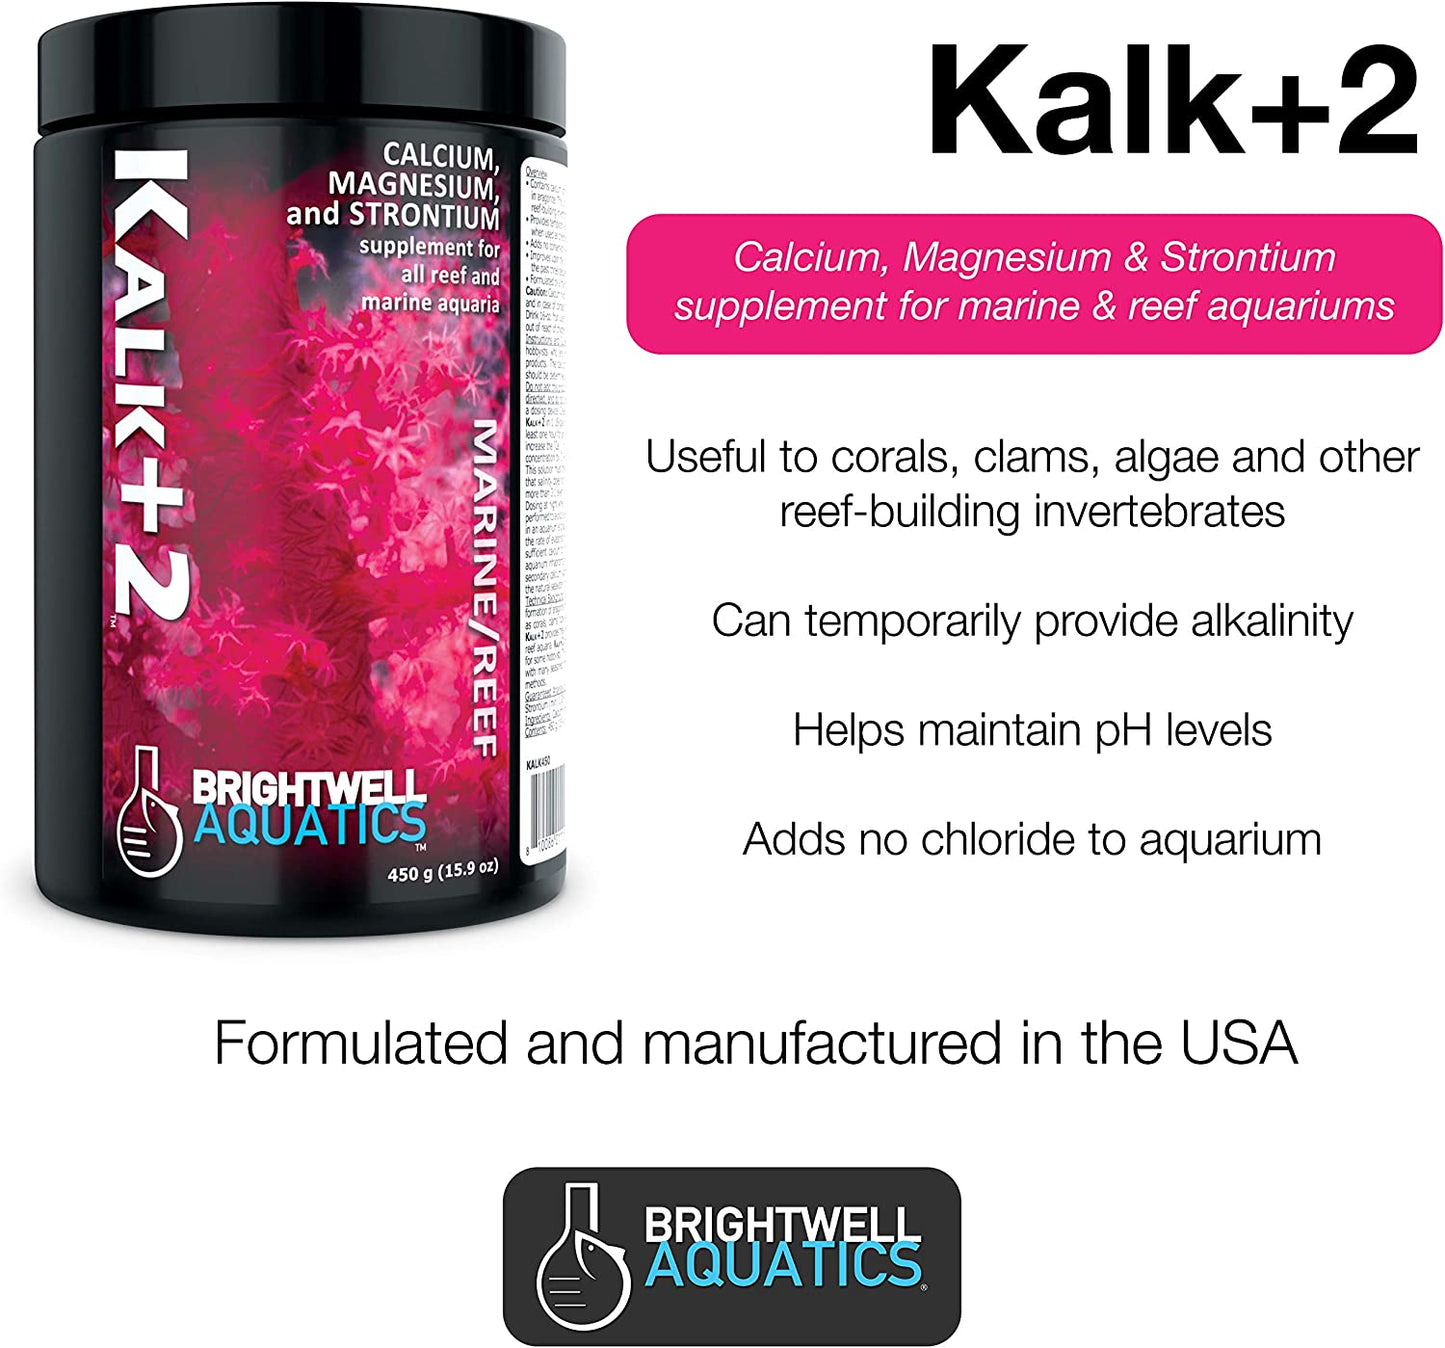 Kalk+2 - Advanced Calcium, Magnesium & Strontium Powdered Kalkwasser Supplement for Marine Fish and Aquariums